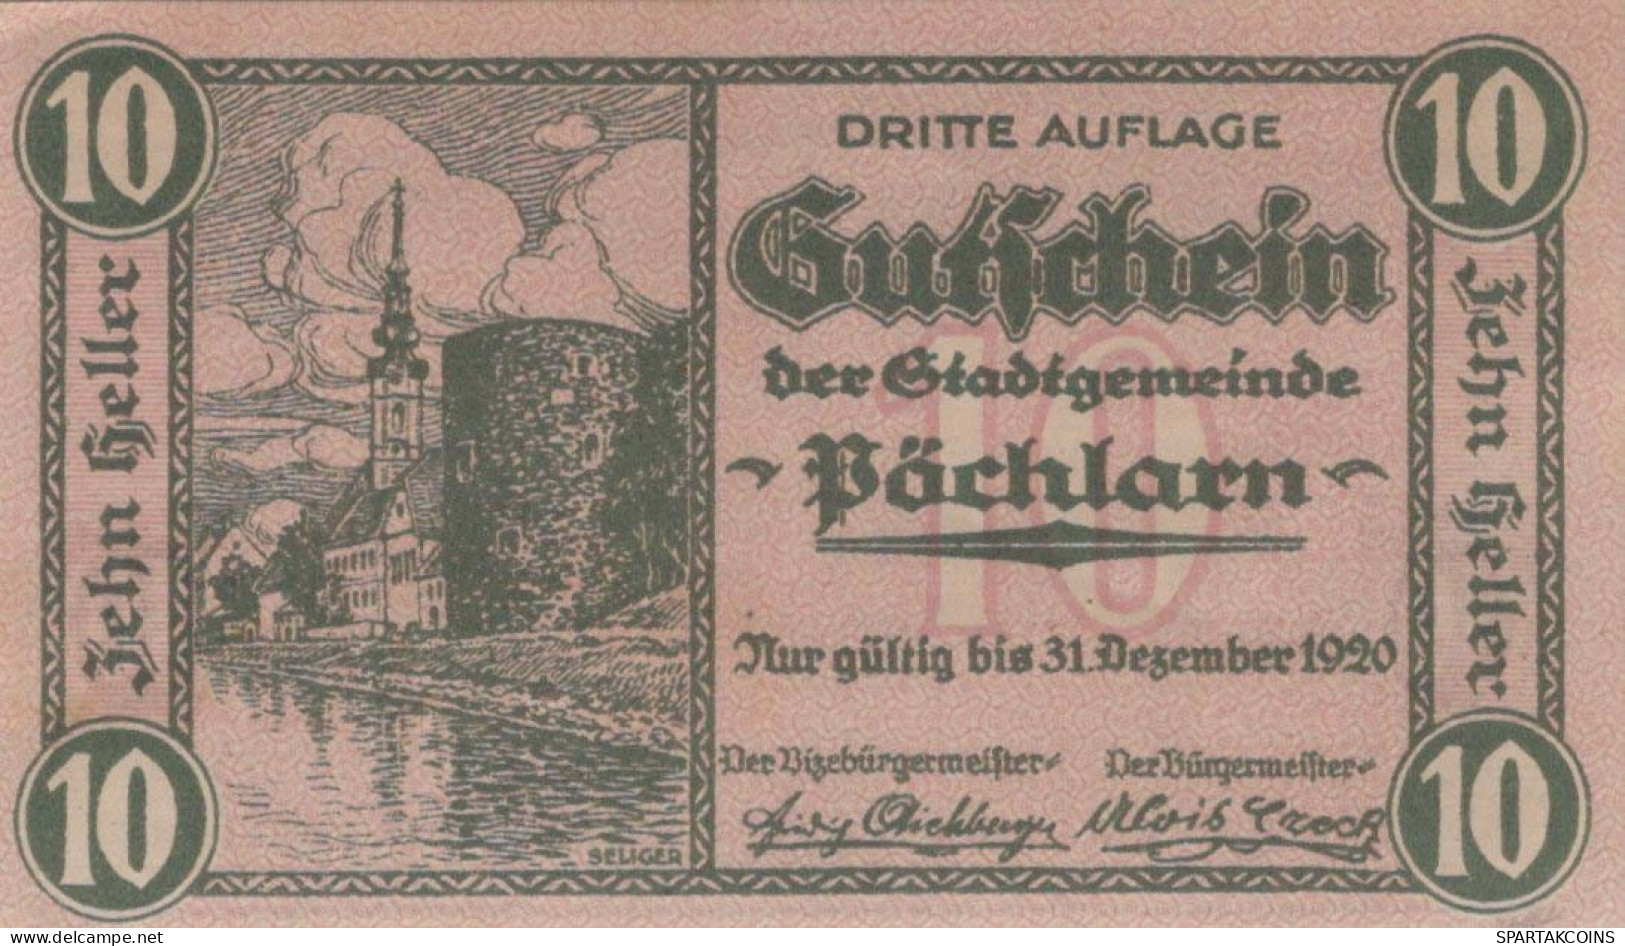 10 HELLER 1920 Stadt PoCHLARN Niedrigeren Österreich Notgeld Banknote #PE284 - [11] Local Banknote Issues